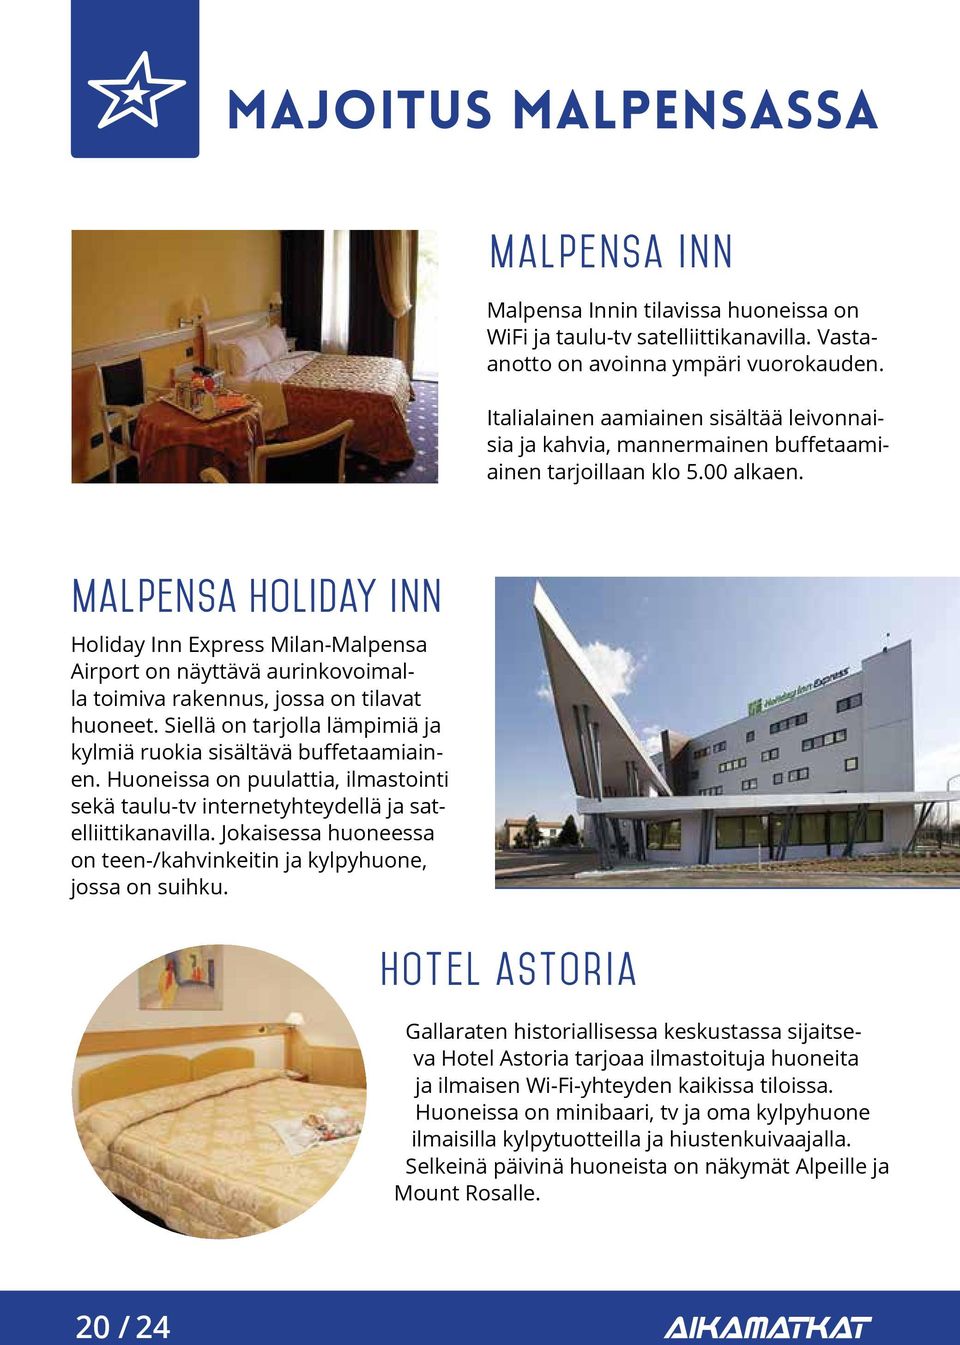 Malpensa holiday Inn Holiday Inn Express Milan-Malpensa Airport on näyttävä aurinkovoimalla toimiva rakennus, jossa on tilavat huoneet.